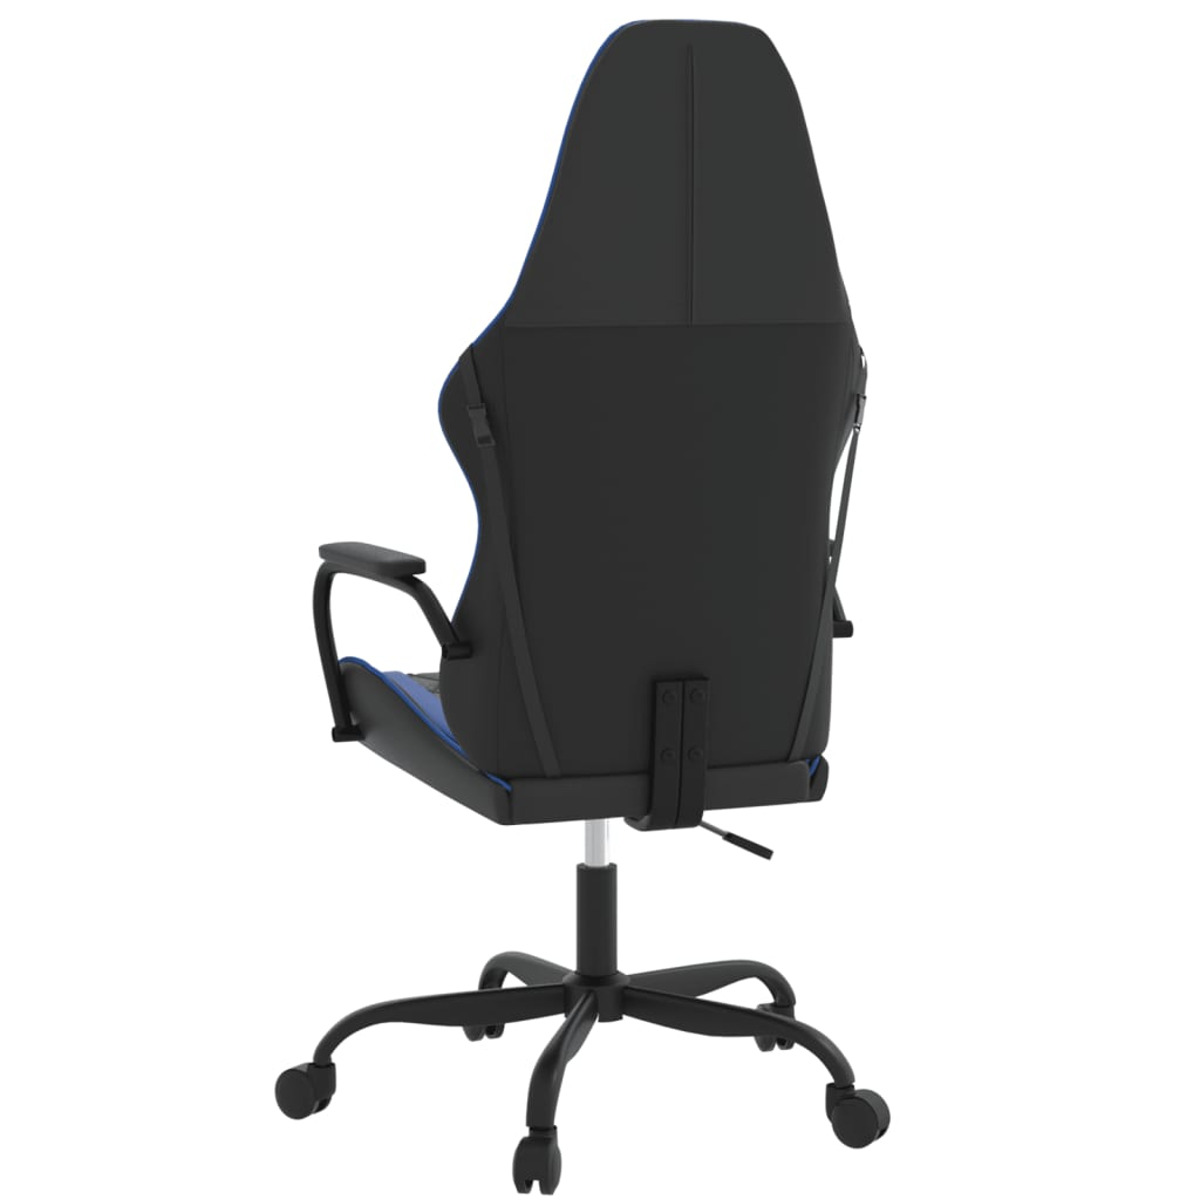 VIDAXL 345533 Gaming Stuhl, Blau und Schwarz